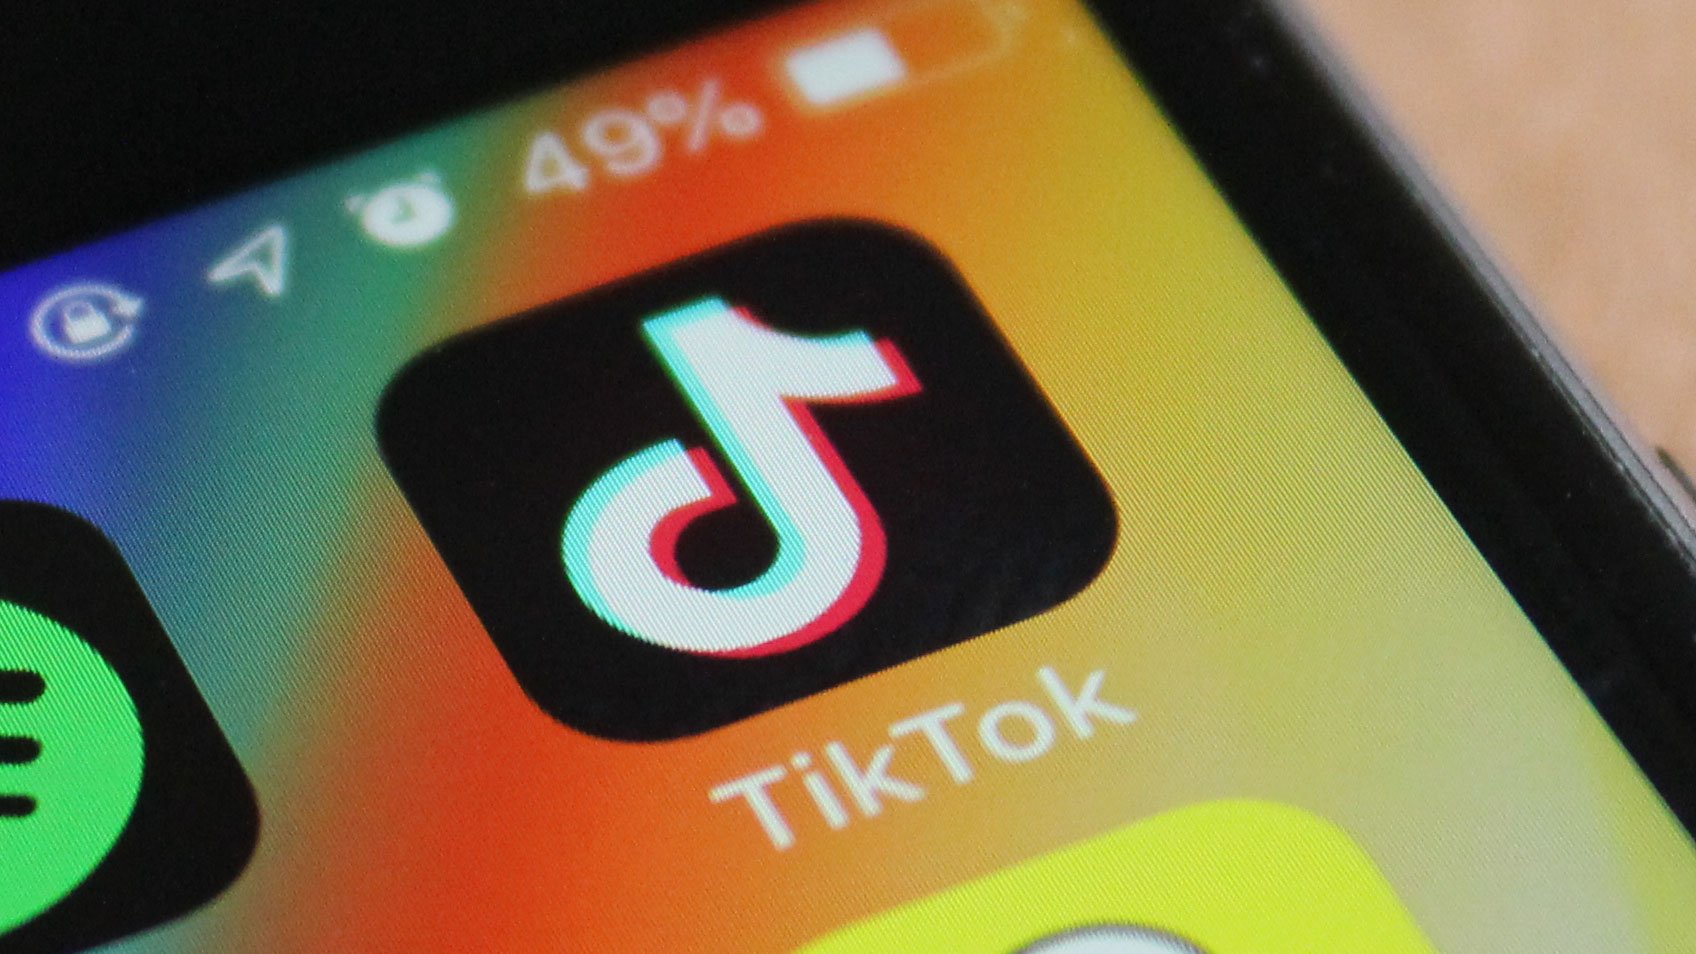 Recentemente, o TikTok mudou as regras para usuários entre 13 e 15 anos.